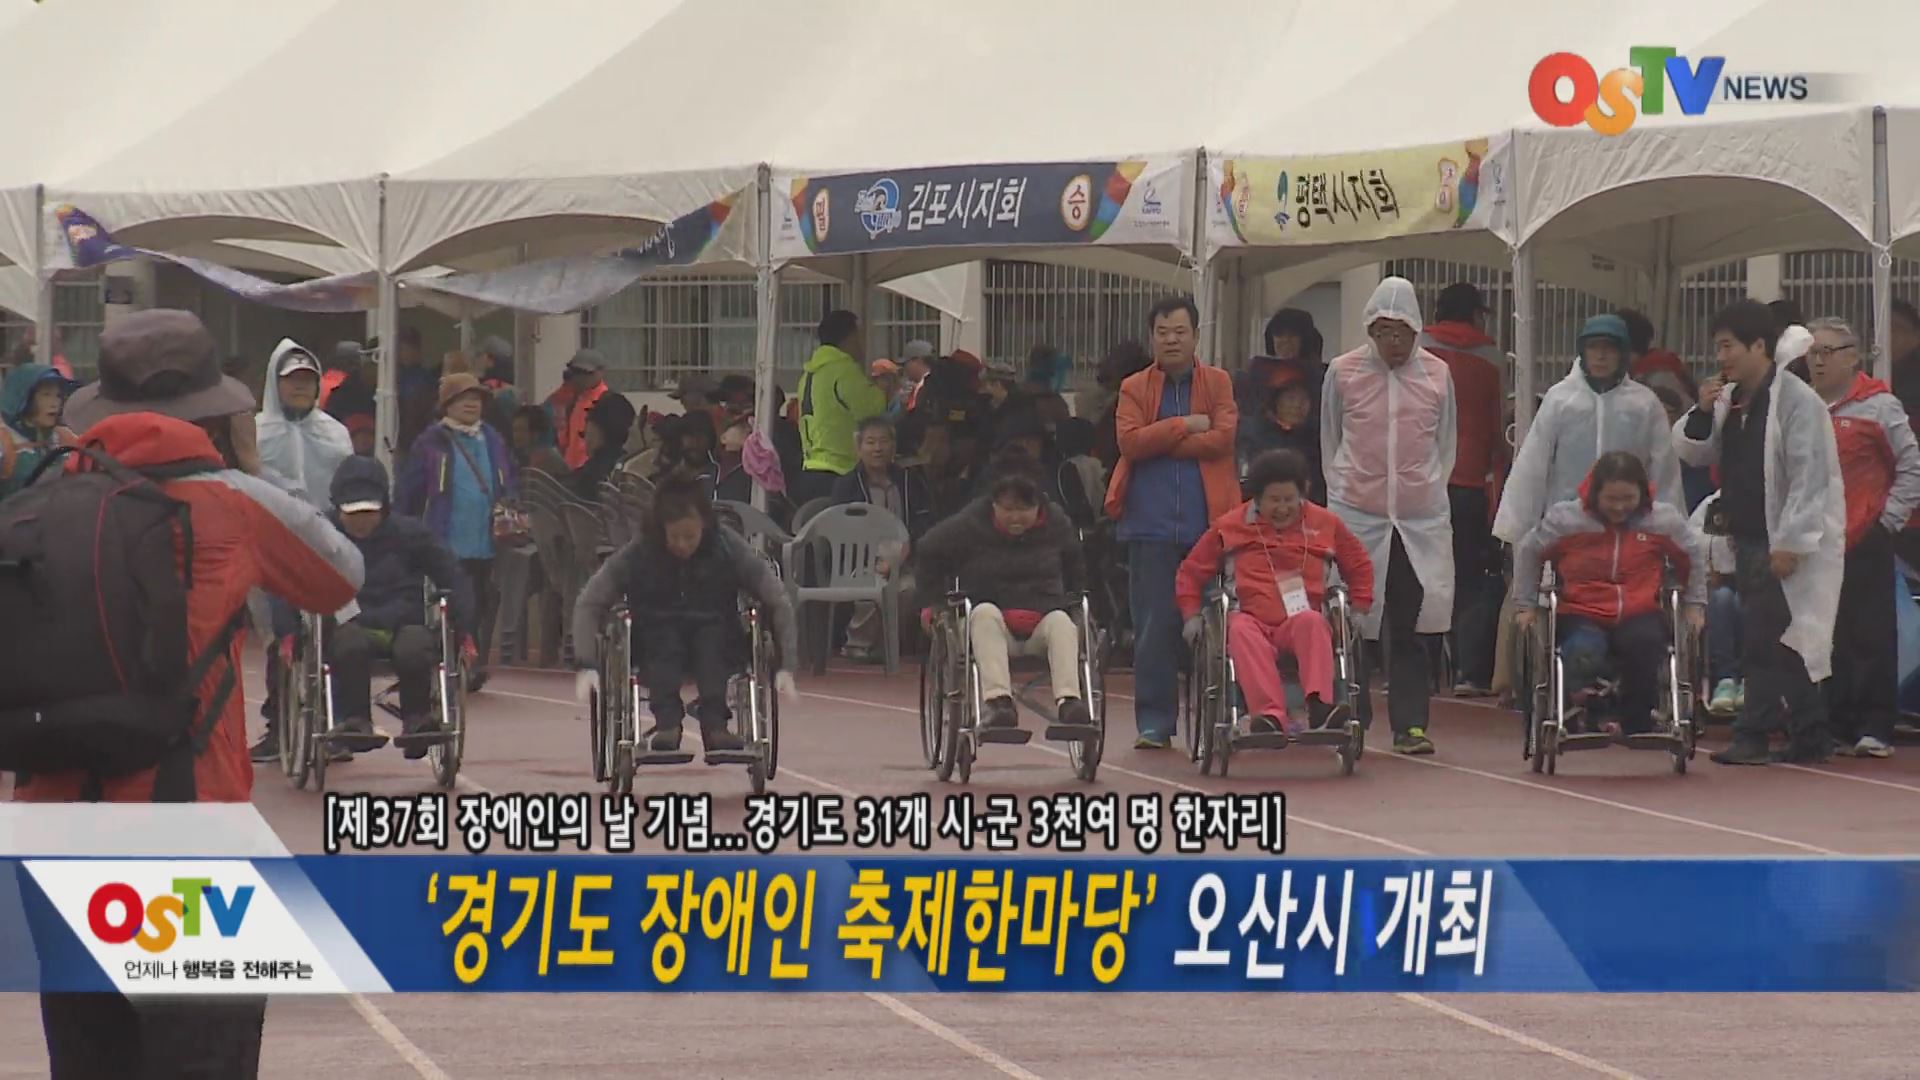 경기도 장애인 축제한마당 오산시 개최